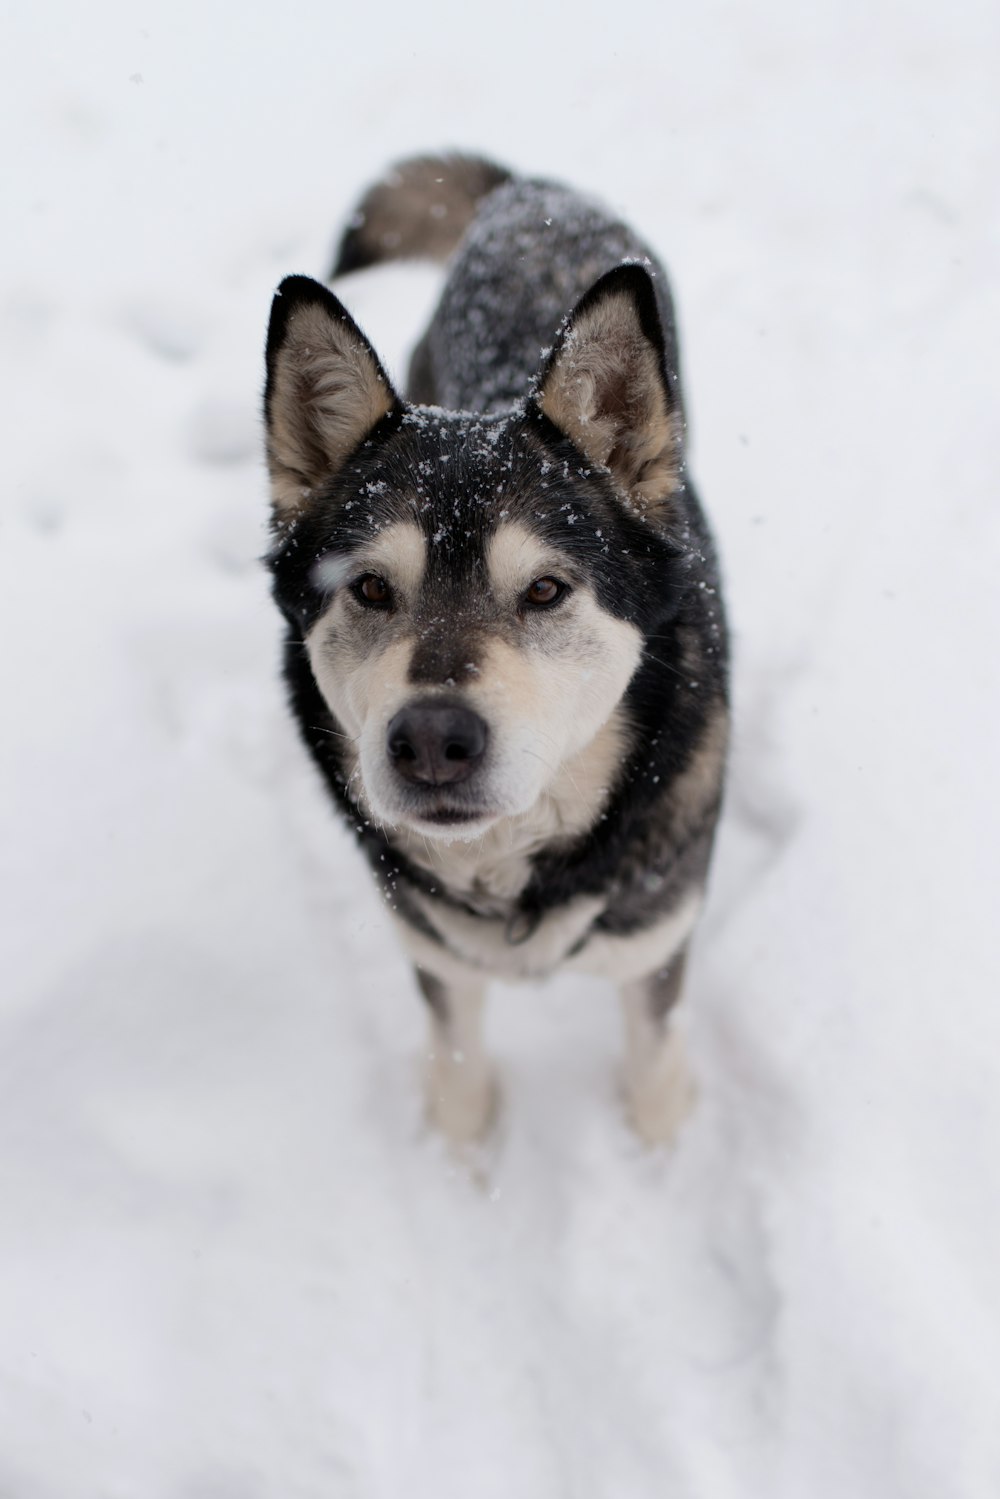 brown and black Siberian Husky on snow